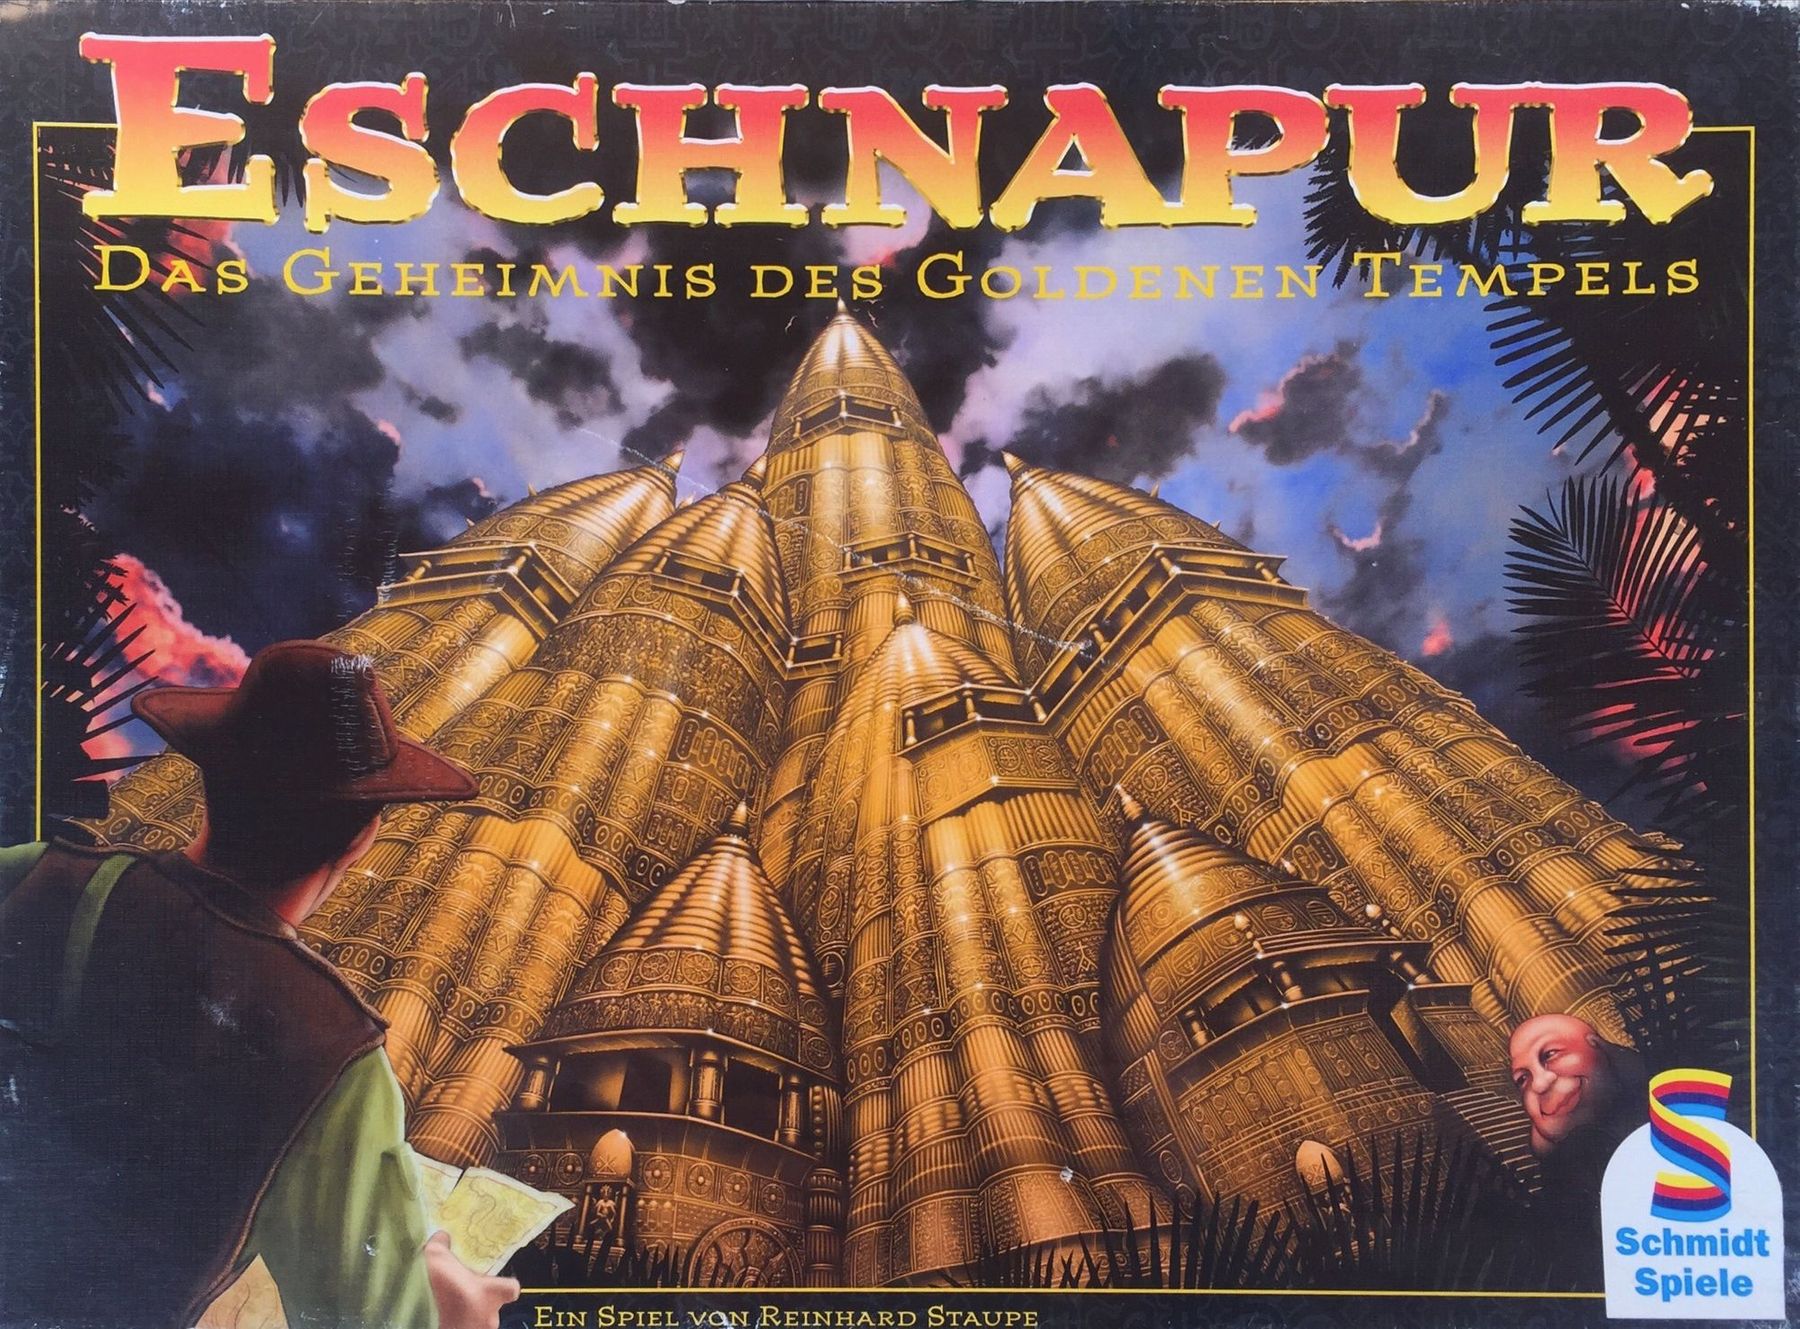 Eschnapur von Schmidt Spiele